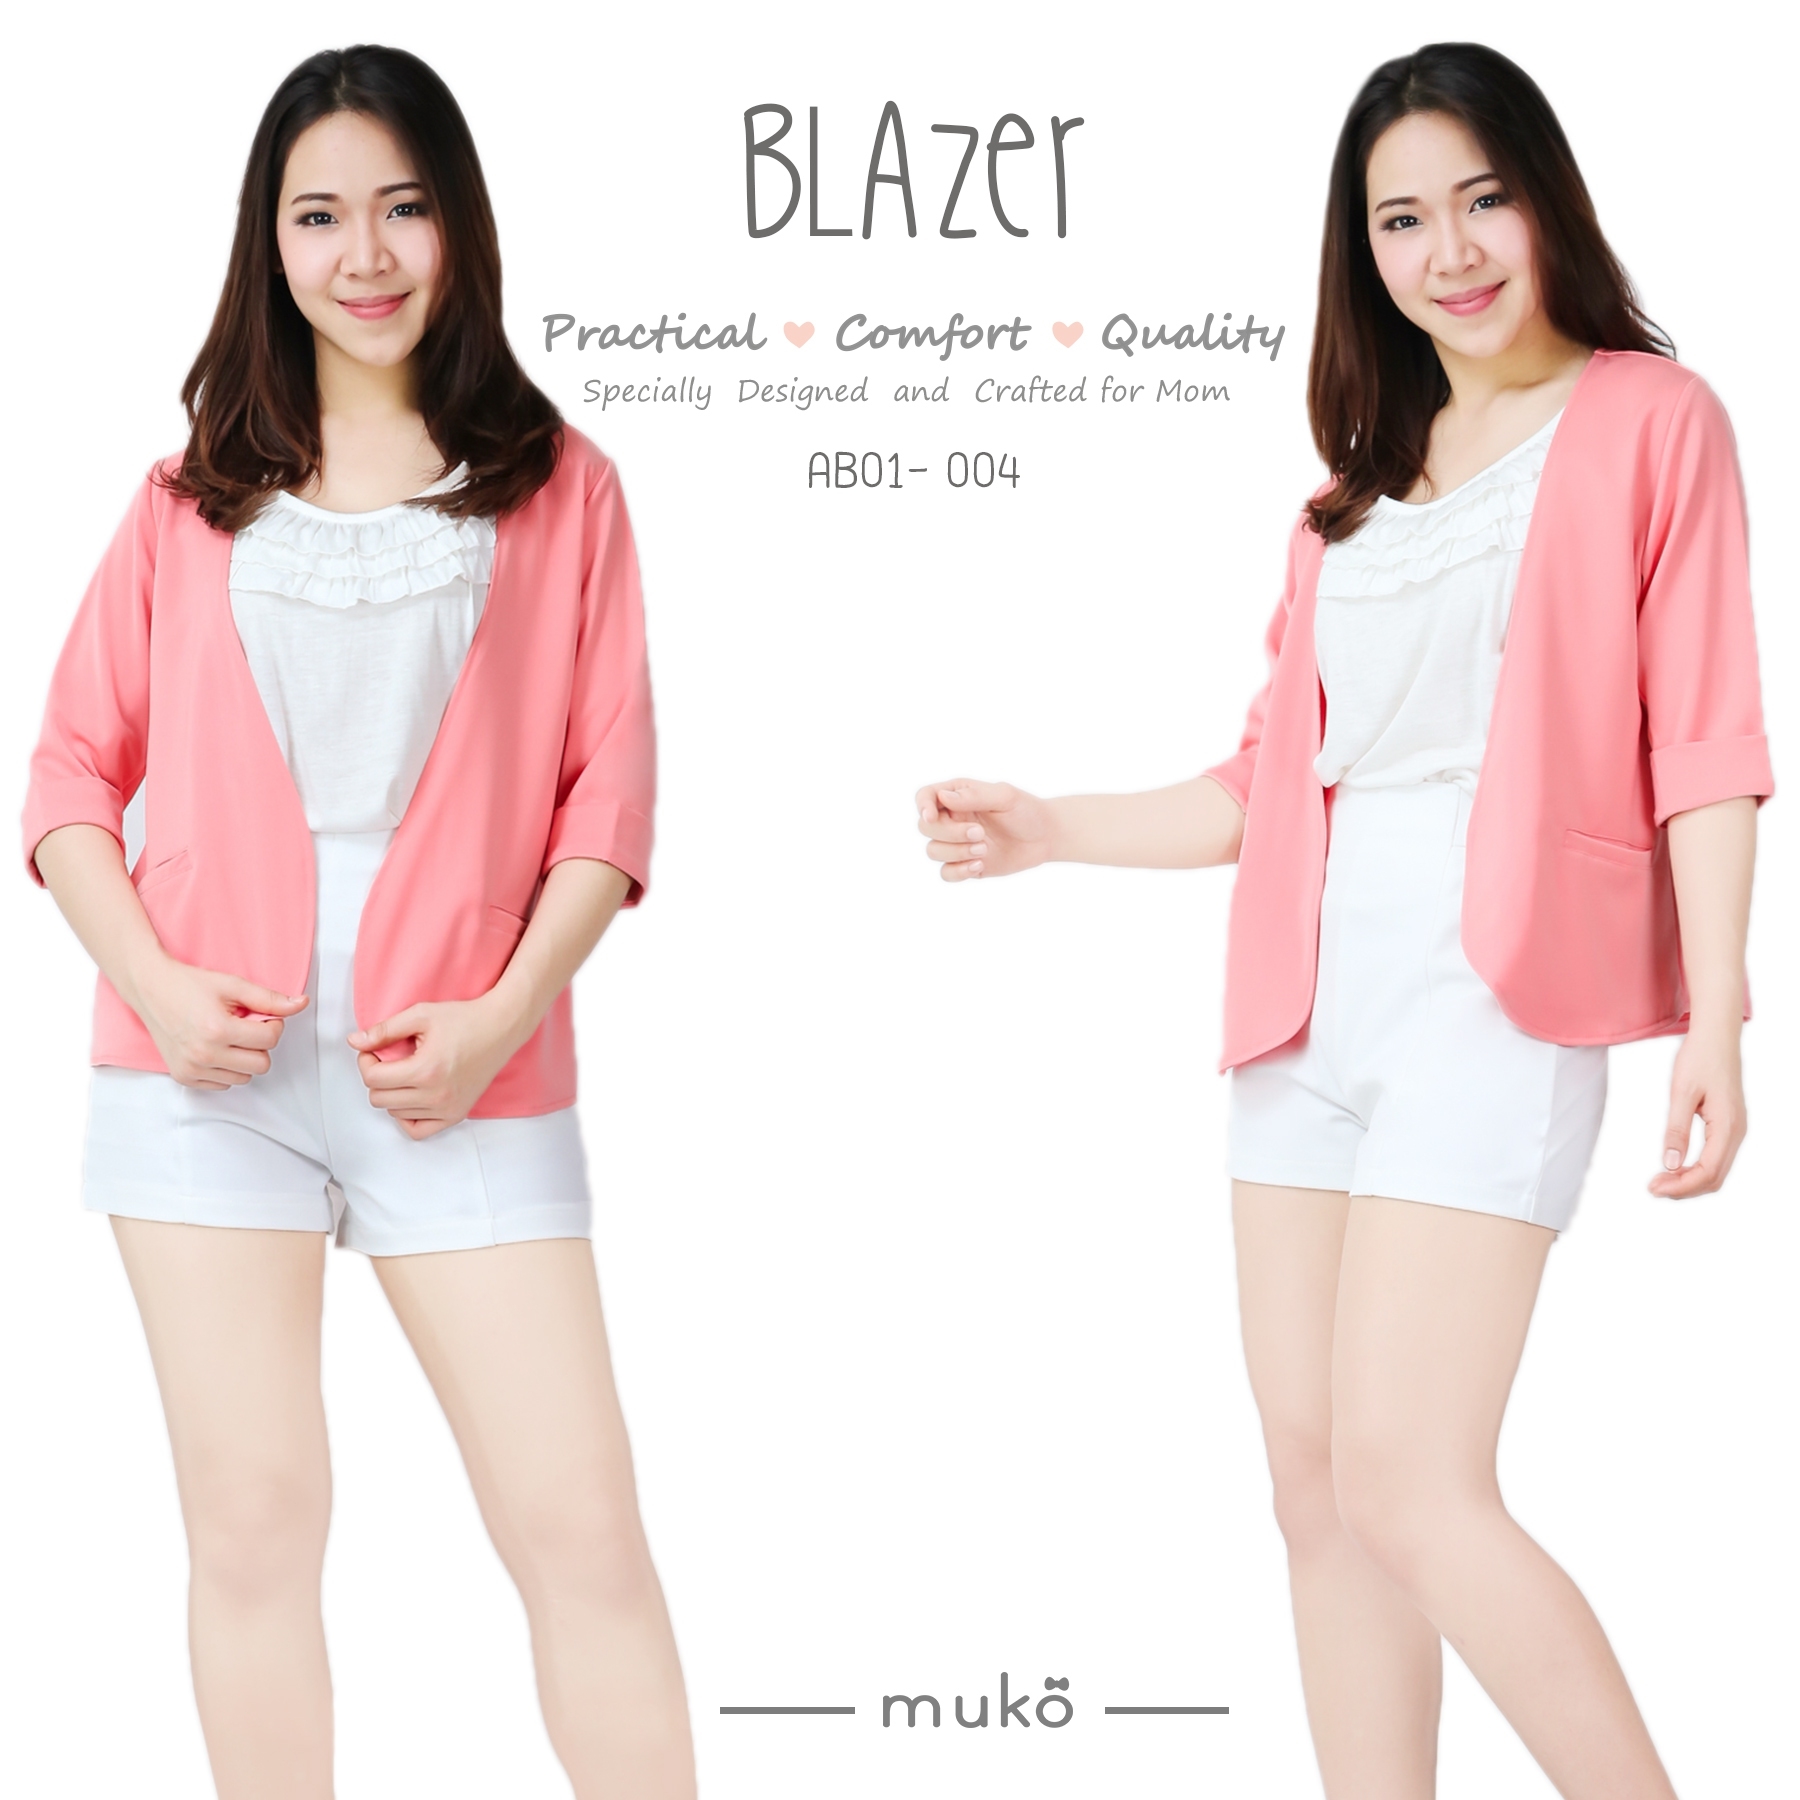 Muko Blazer เสื้อคลุมผ้าฮานาโกะ AB01-004 สีส้ม